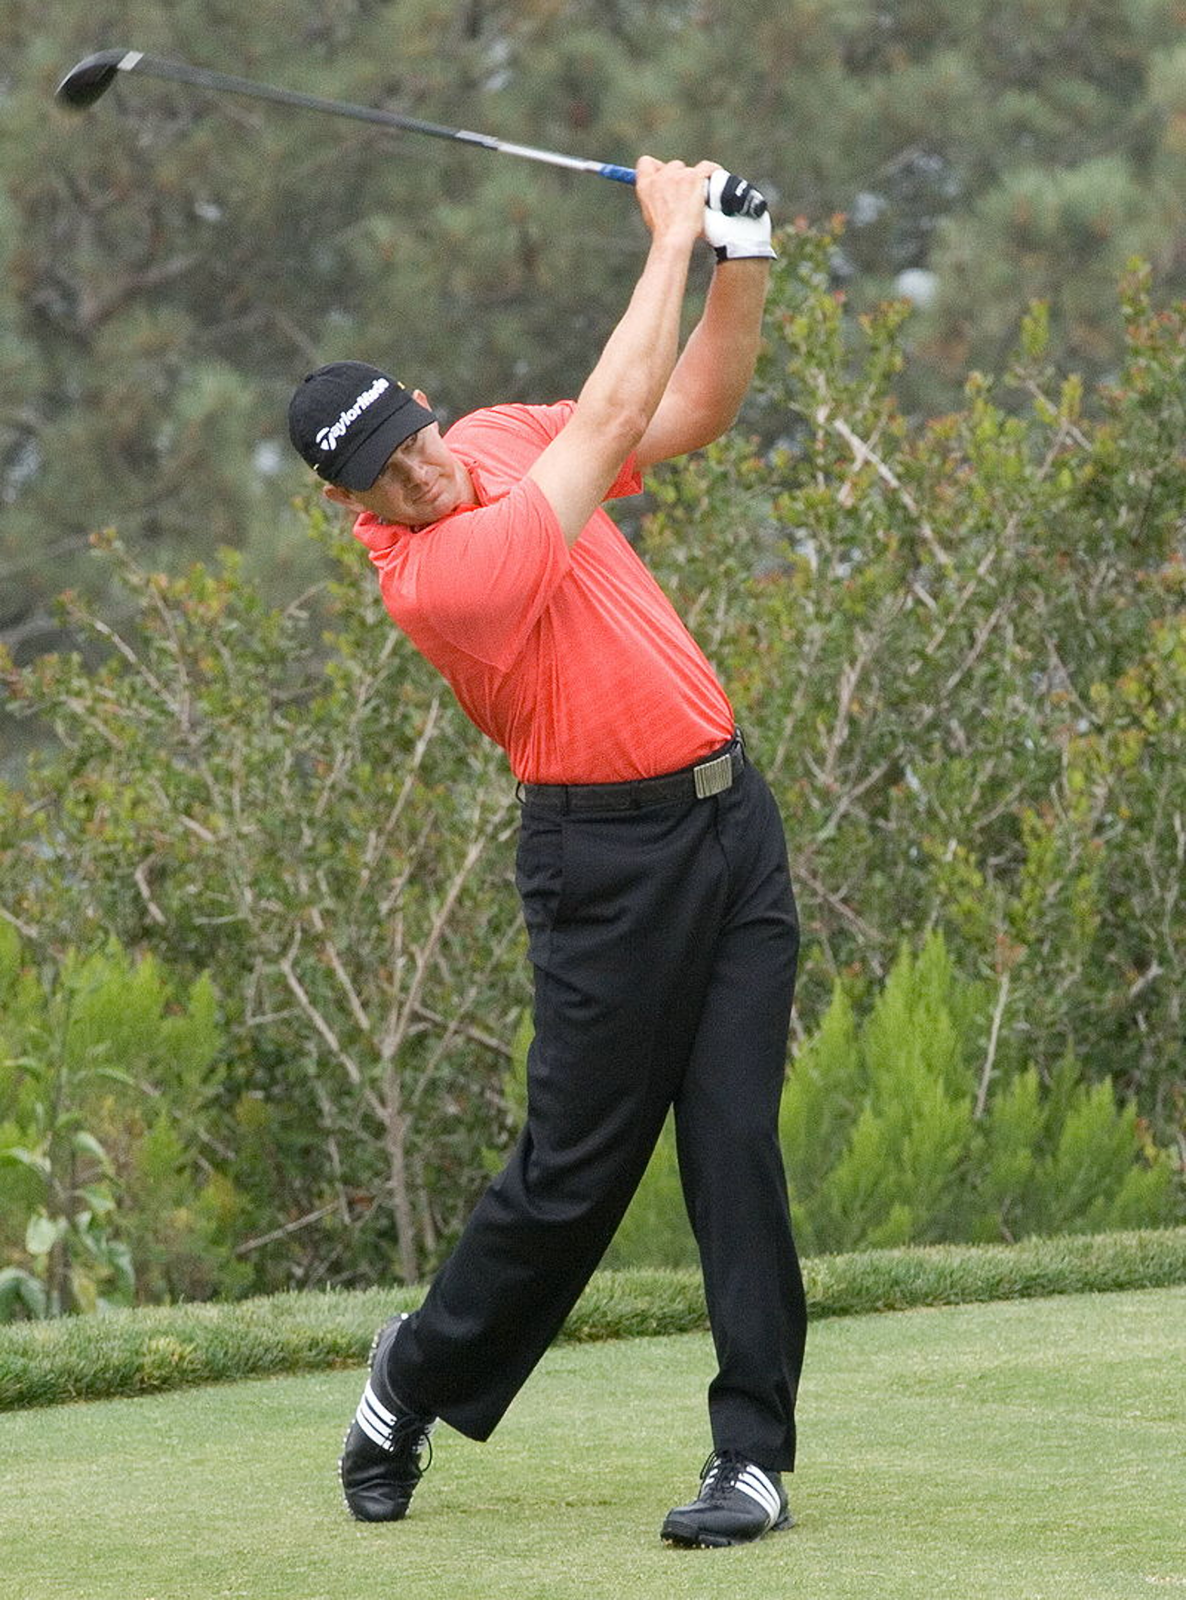 Rys. 5. Zdjęcie przedstawia golfistę z kijem w rękach uniesionym nad głową tuż po wybiciu piłeczki. Sylwetka golfisty wygięta jest w charakterystyczny lekki łuk dla wzmocnienia skuteczności wybicia piłeczki.